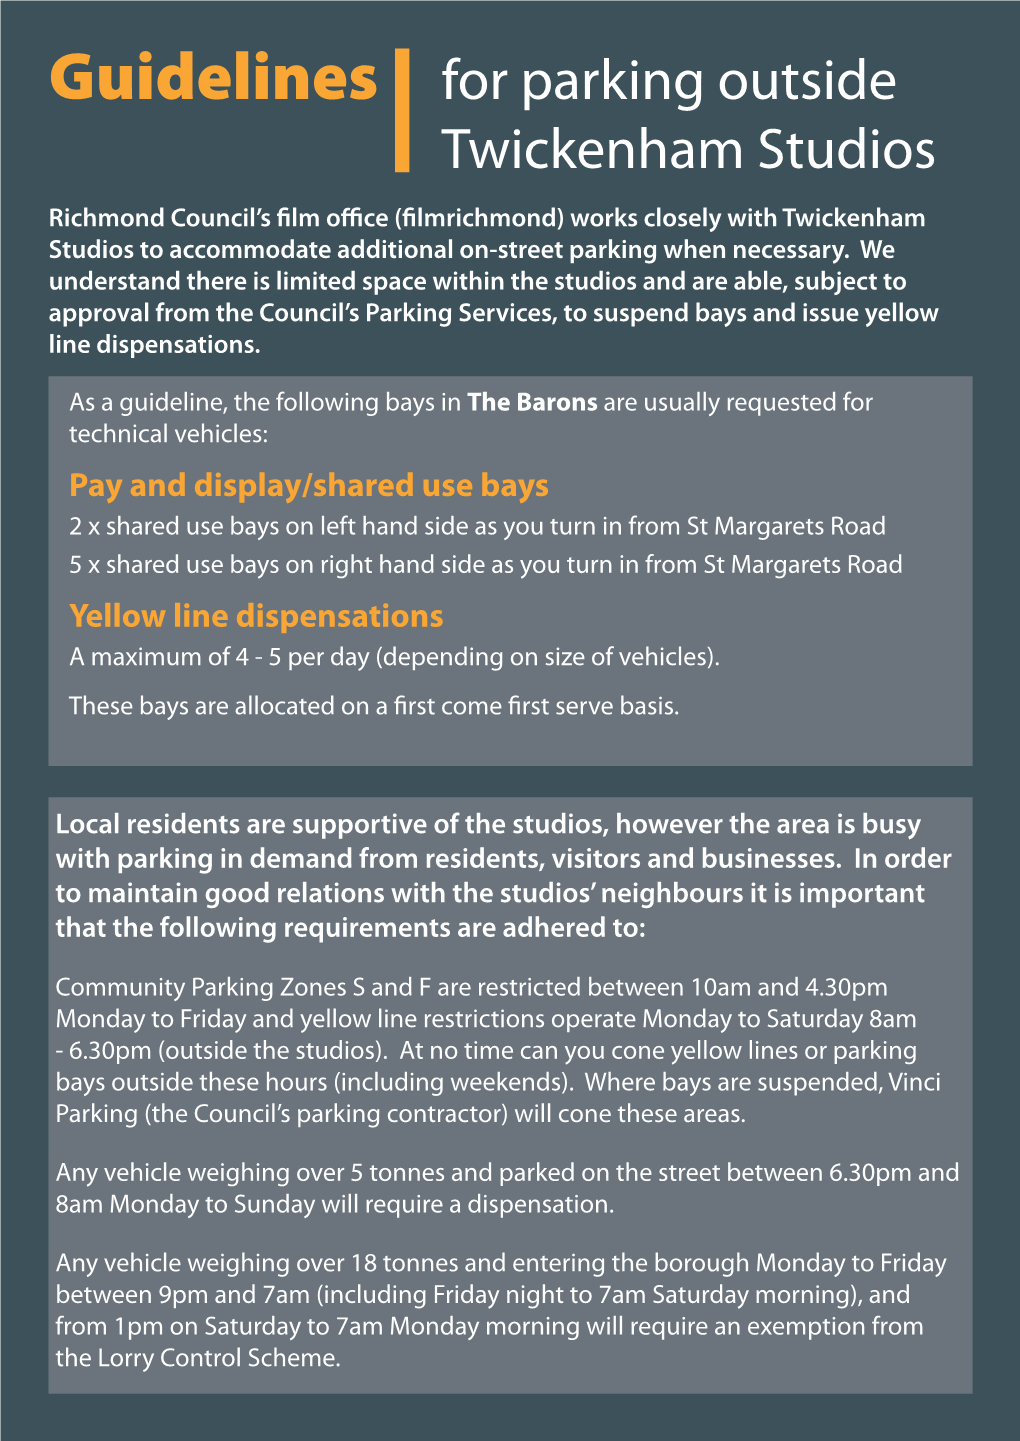 Guidelines for Parking Outside Twickenham Studios